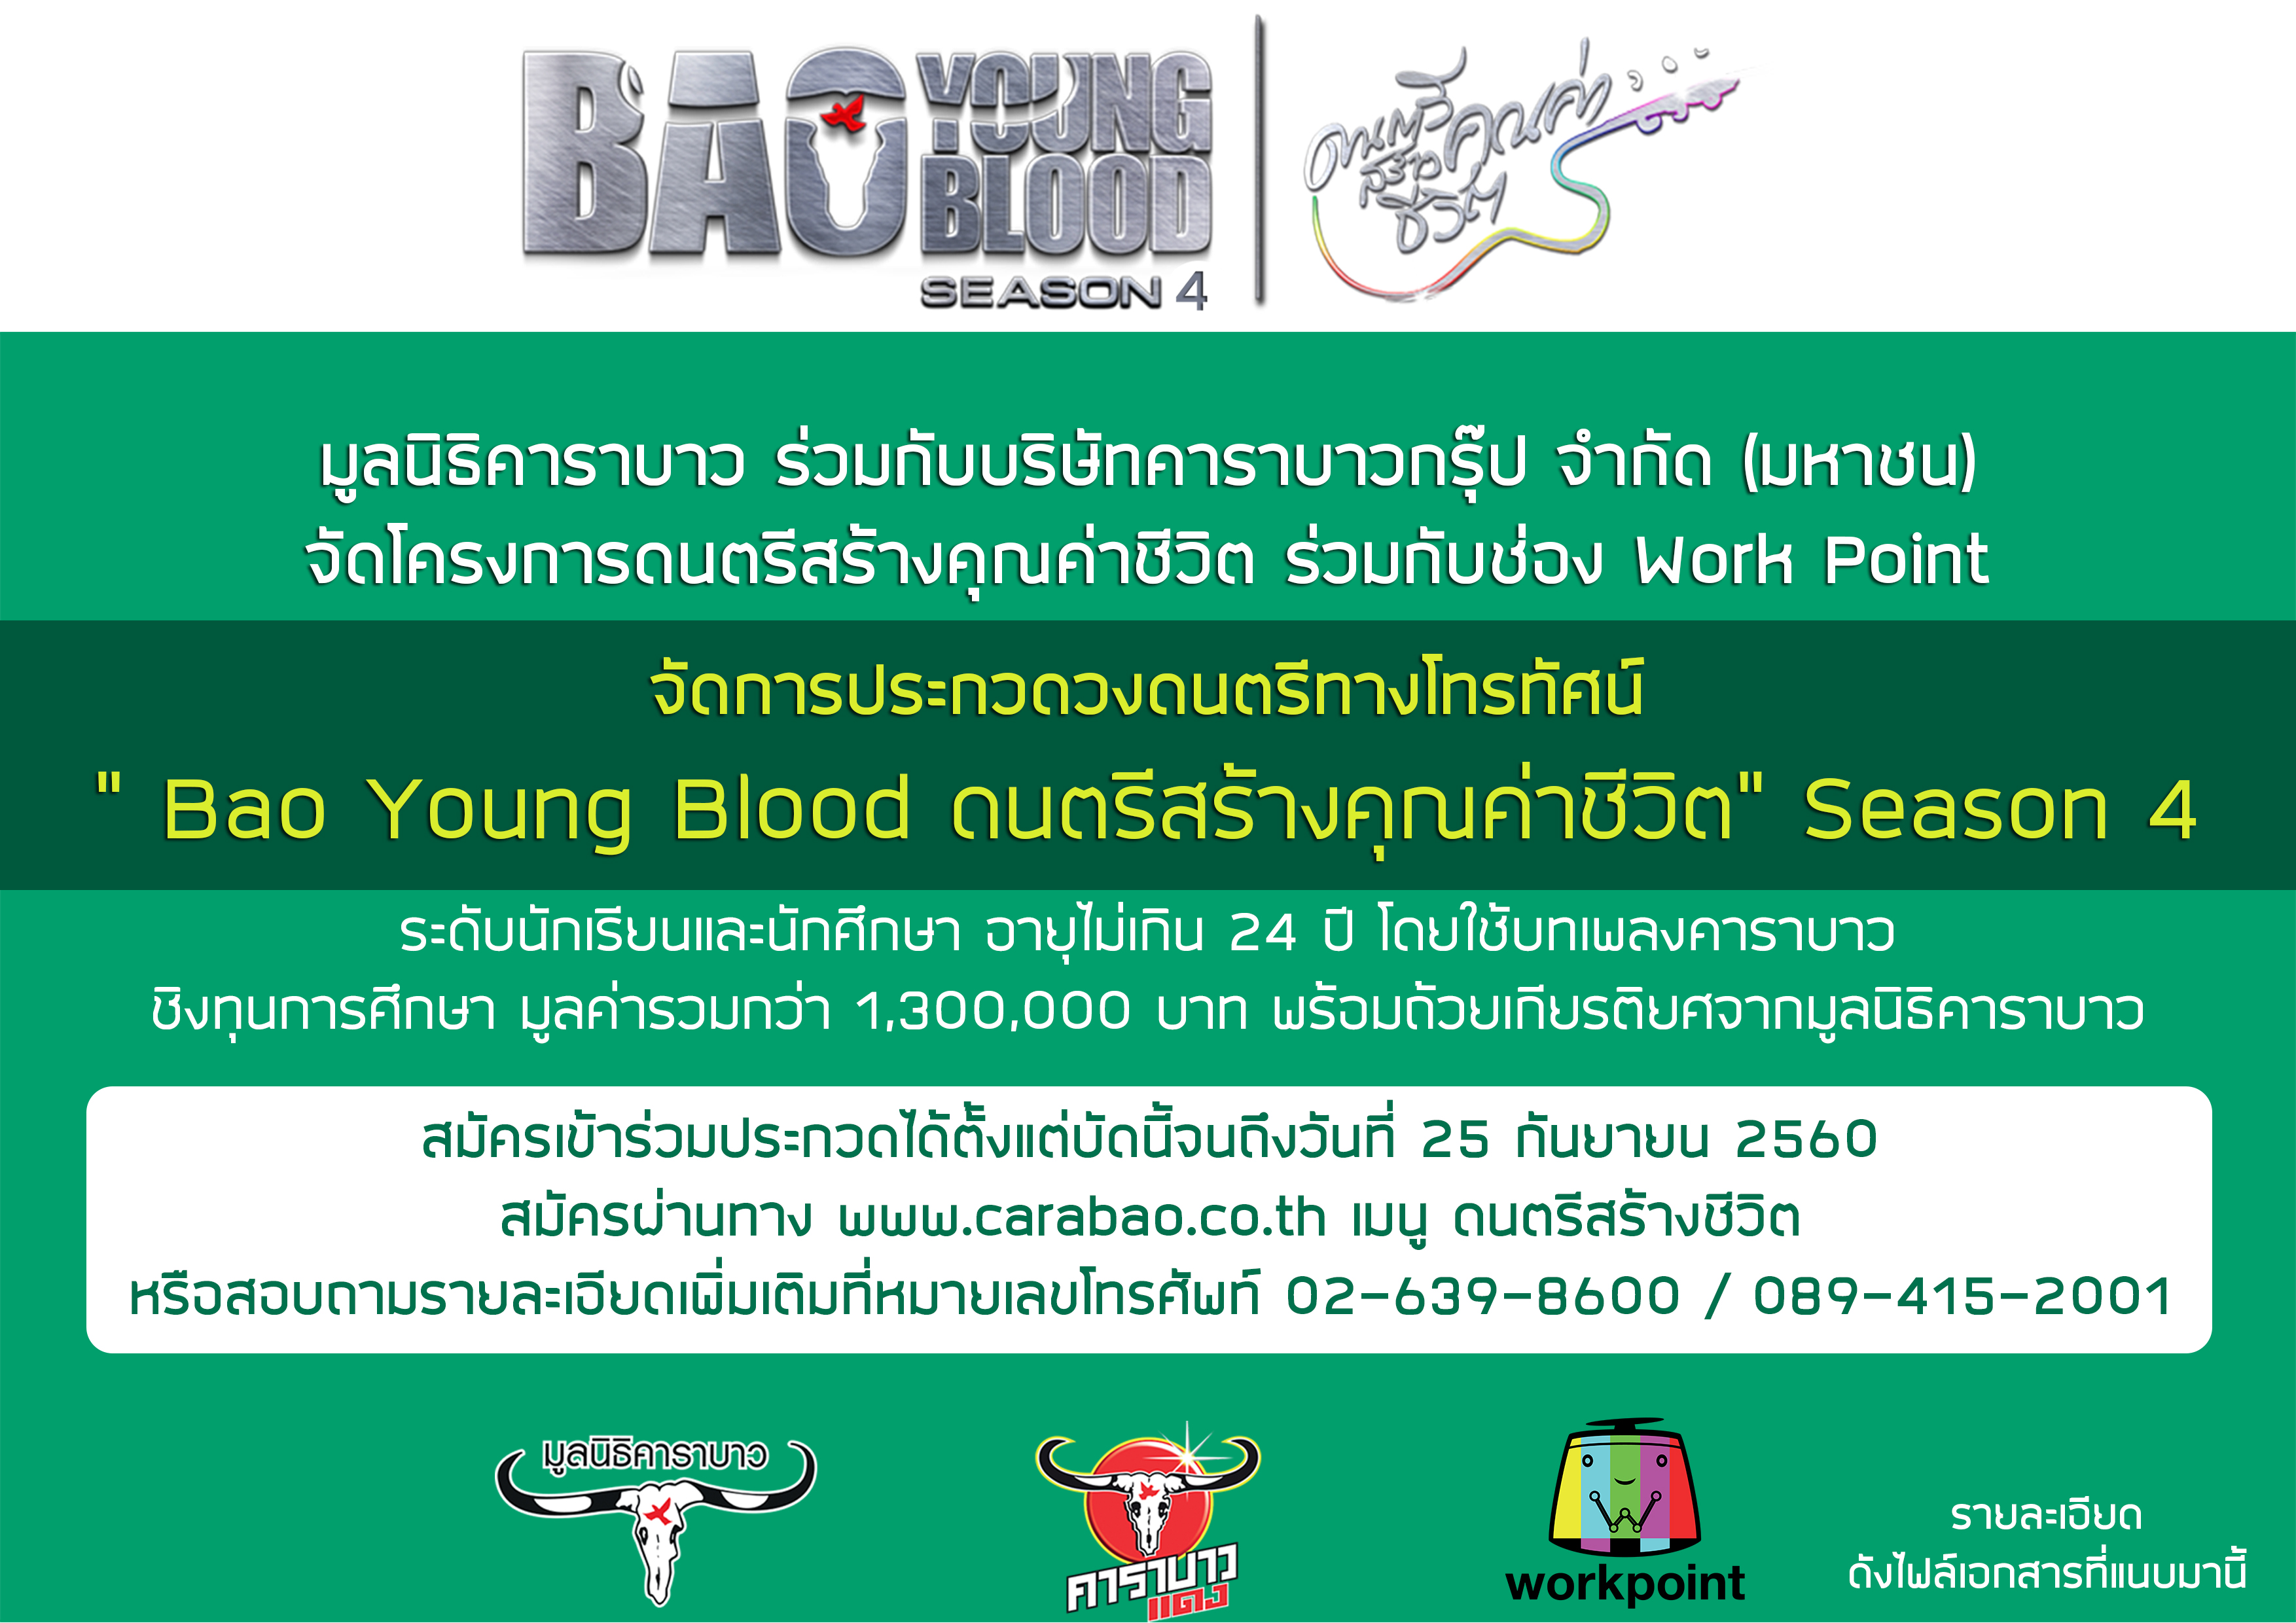 การประกวดวงดนตรีทางโทรทัศน์ “ Bao Young Blood ดนตรีสร้างคุณค่าชีวิต” Season 4